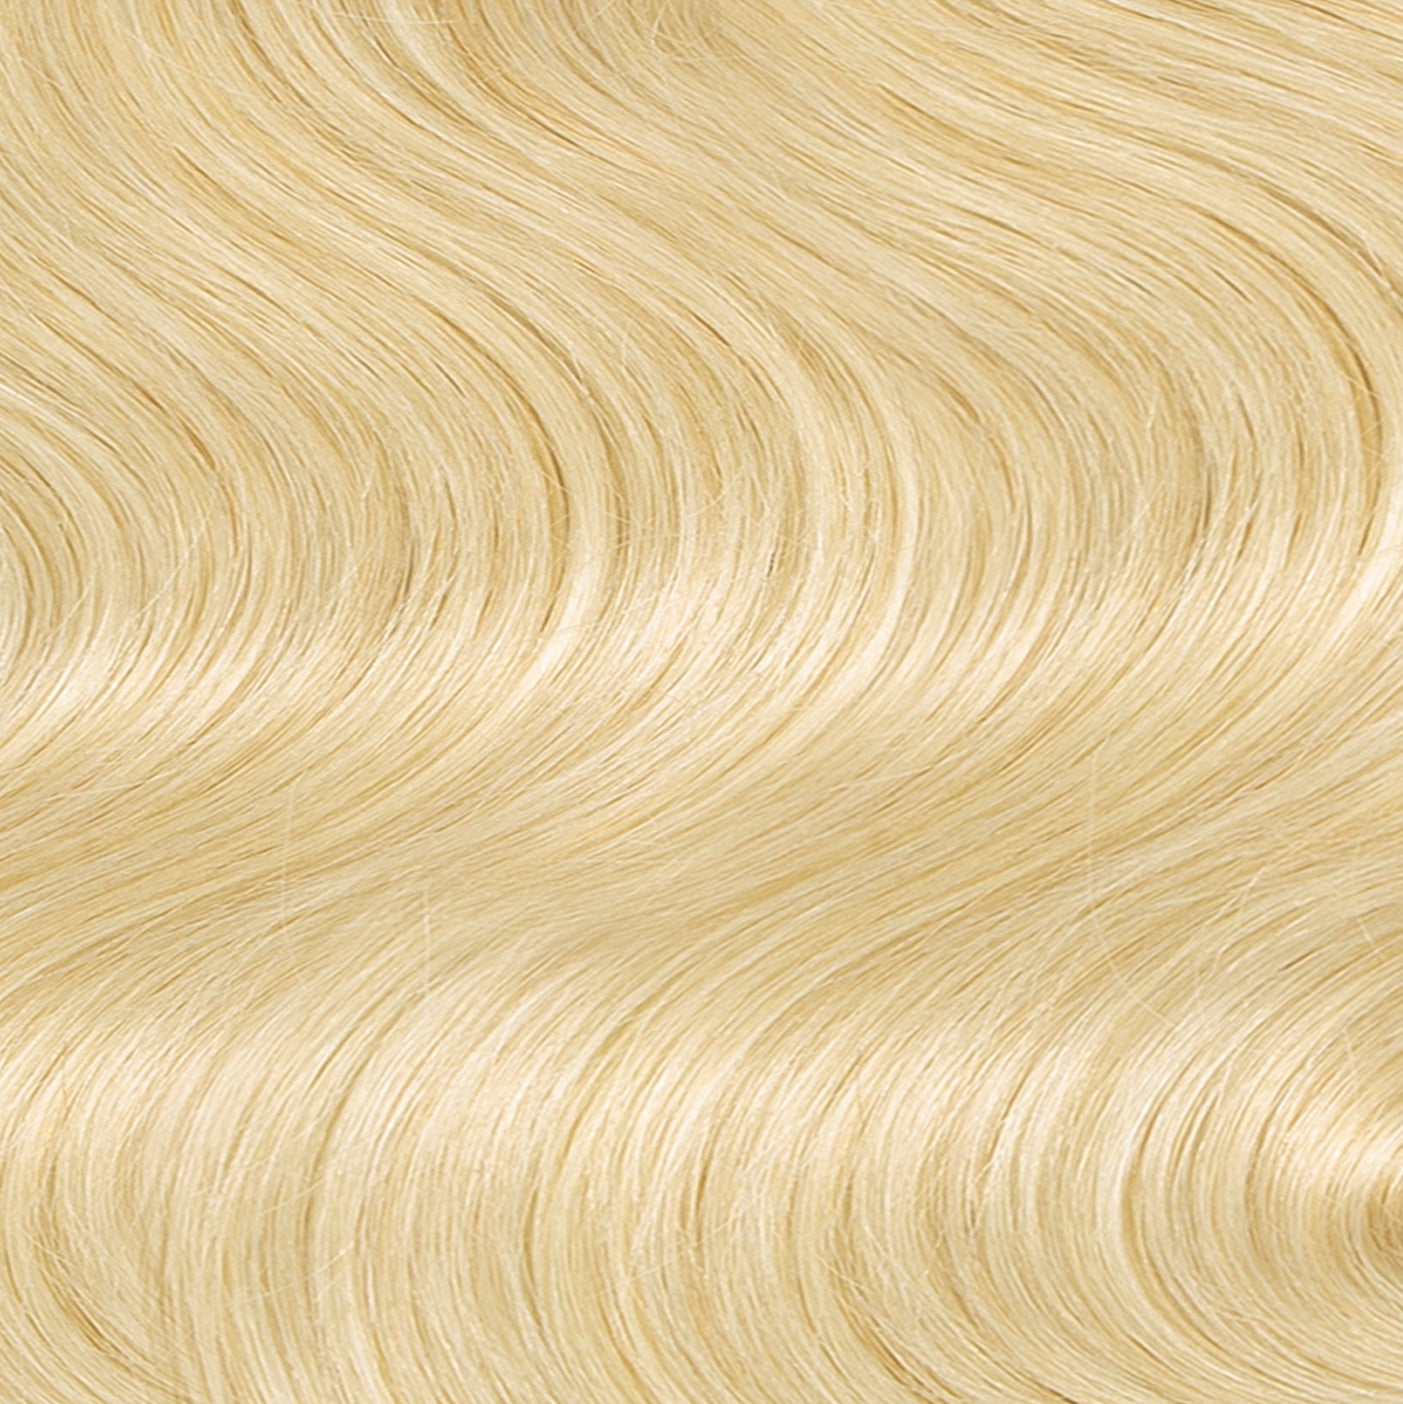 Keratin Bond Hair Extensions #613 Bleach Blonde